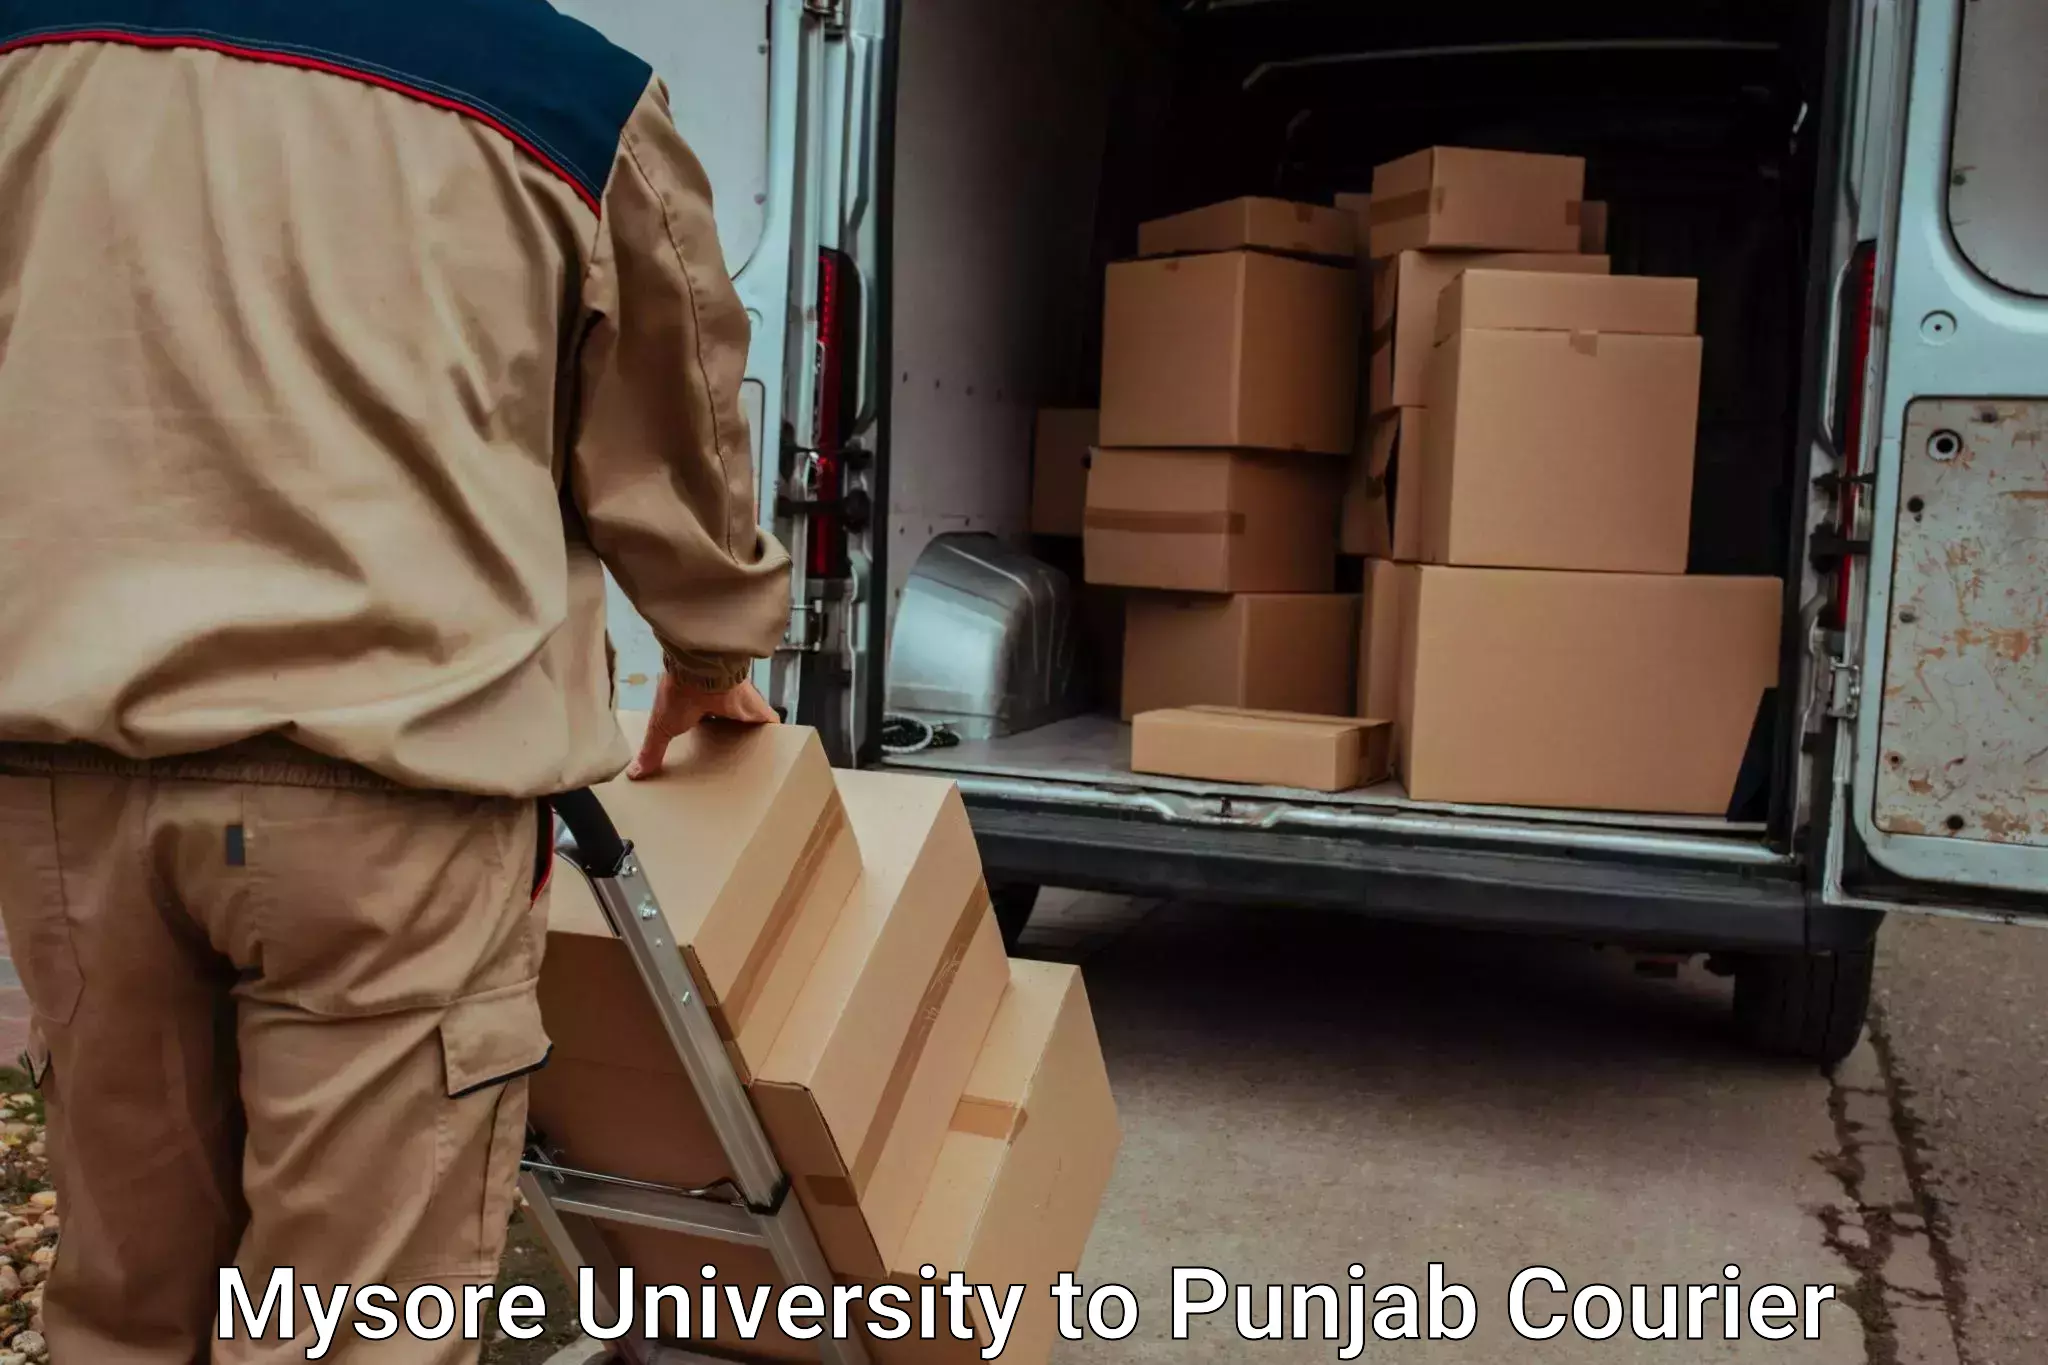 Door to door luggage delivery in Mysore University to Punjab